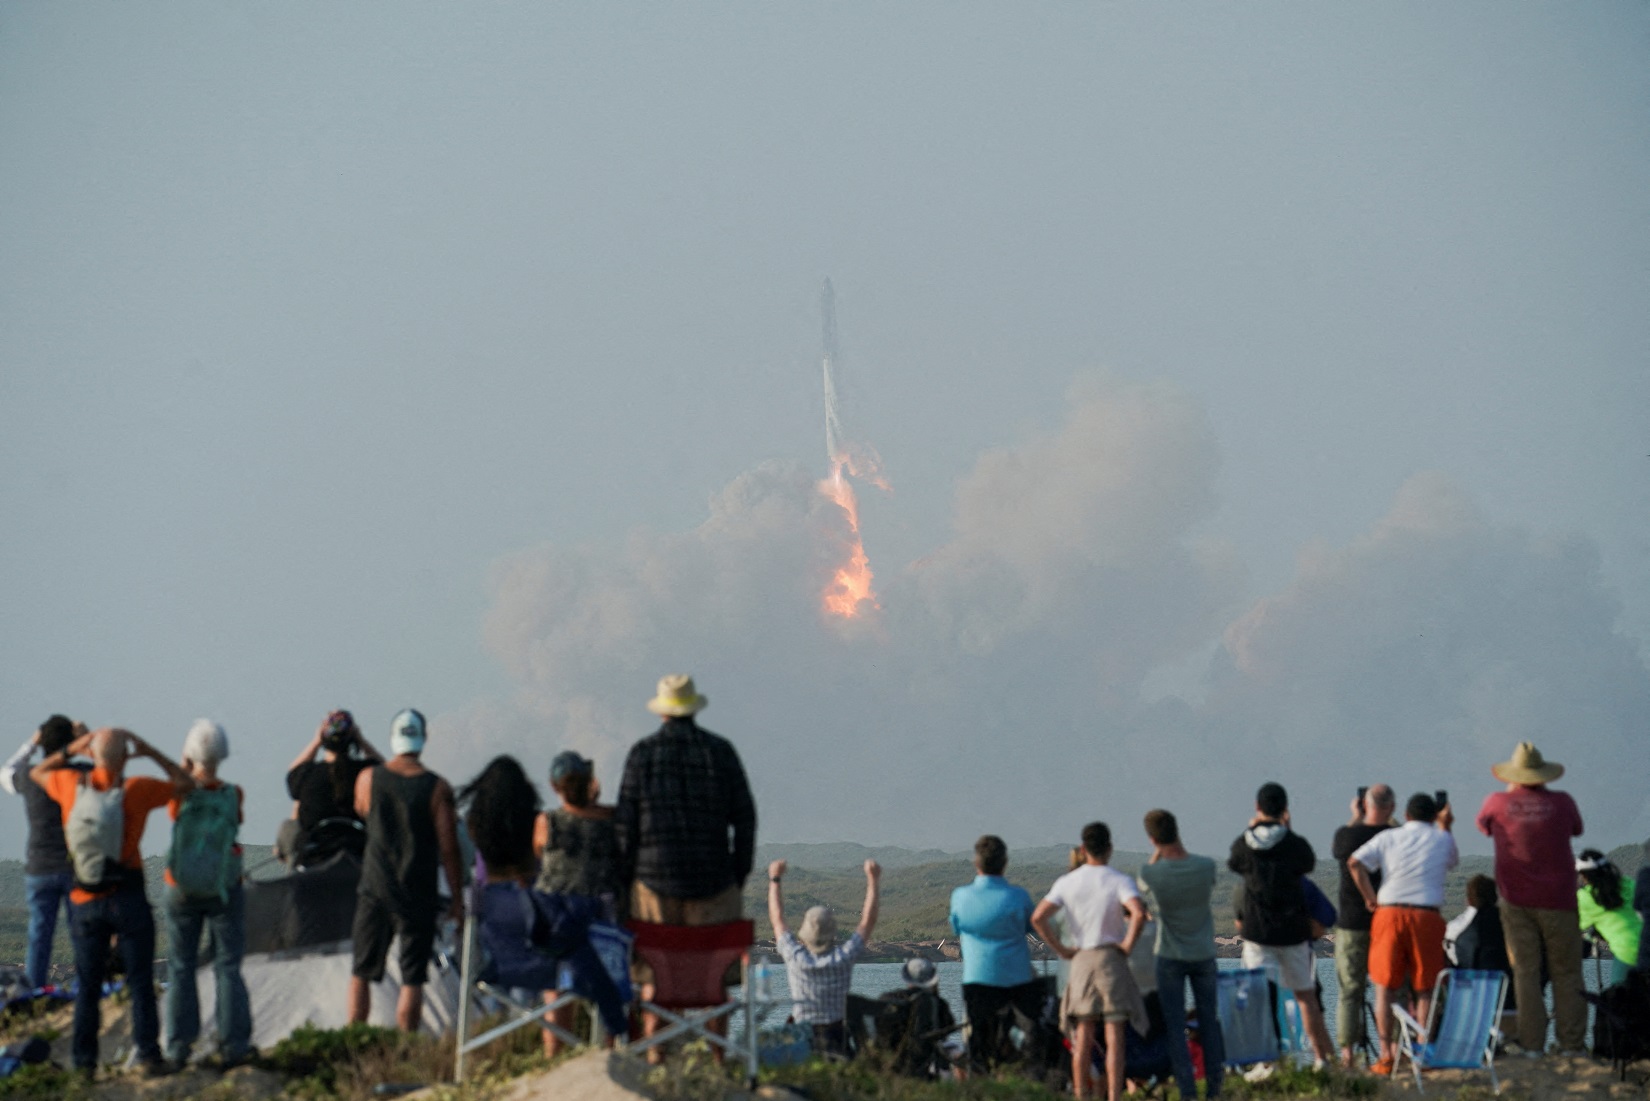 Veja como é um teste de lançamento de foguete visto de perto